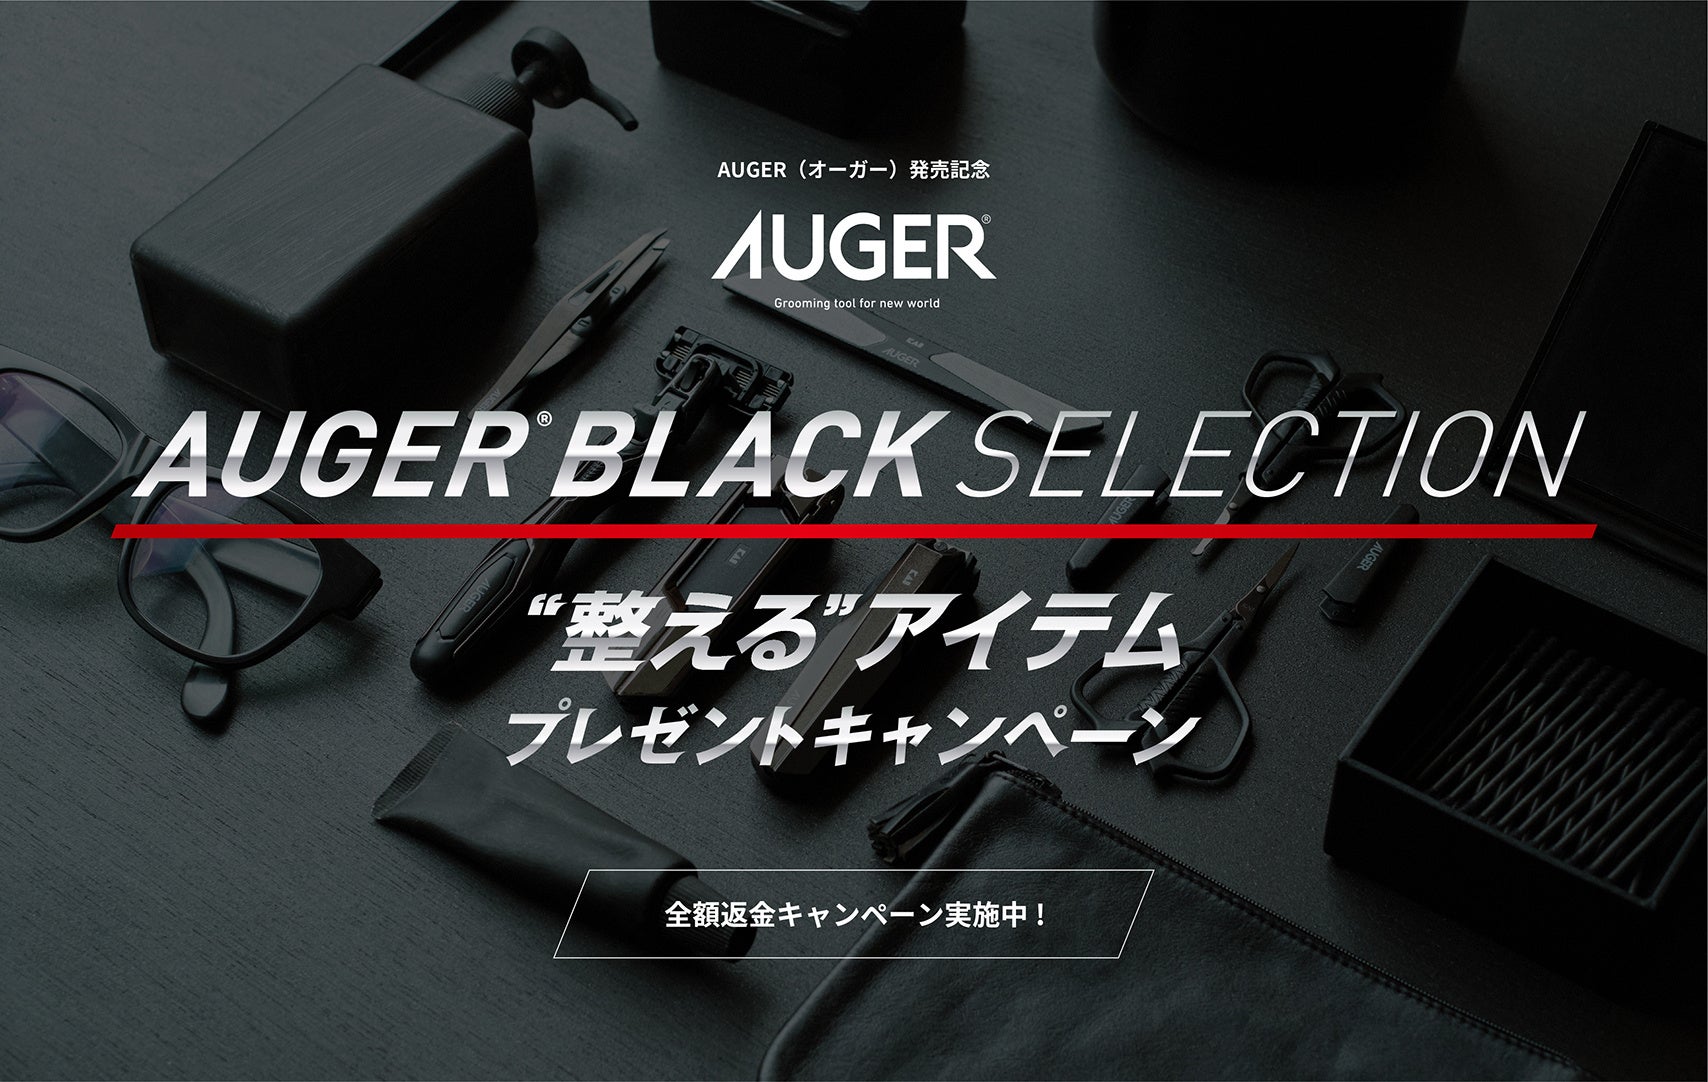 グルーミングツール新ブランド「AUGER®」発売記念「AUGER® BLACK SELECTION “整える”アイテムプレゼントキャンペーン」「全額返金キャンペーン」がスタート！